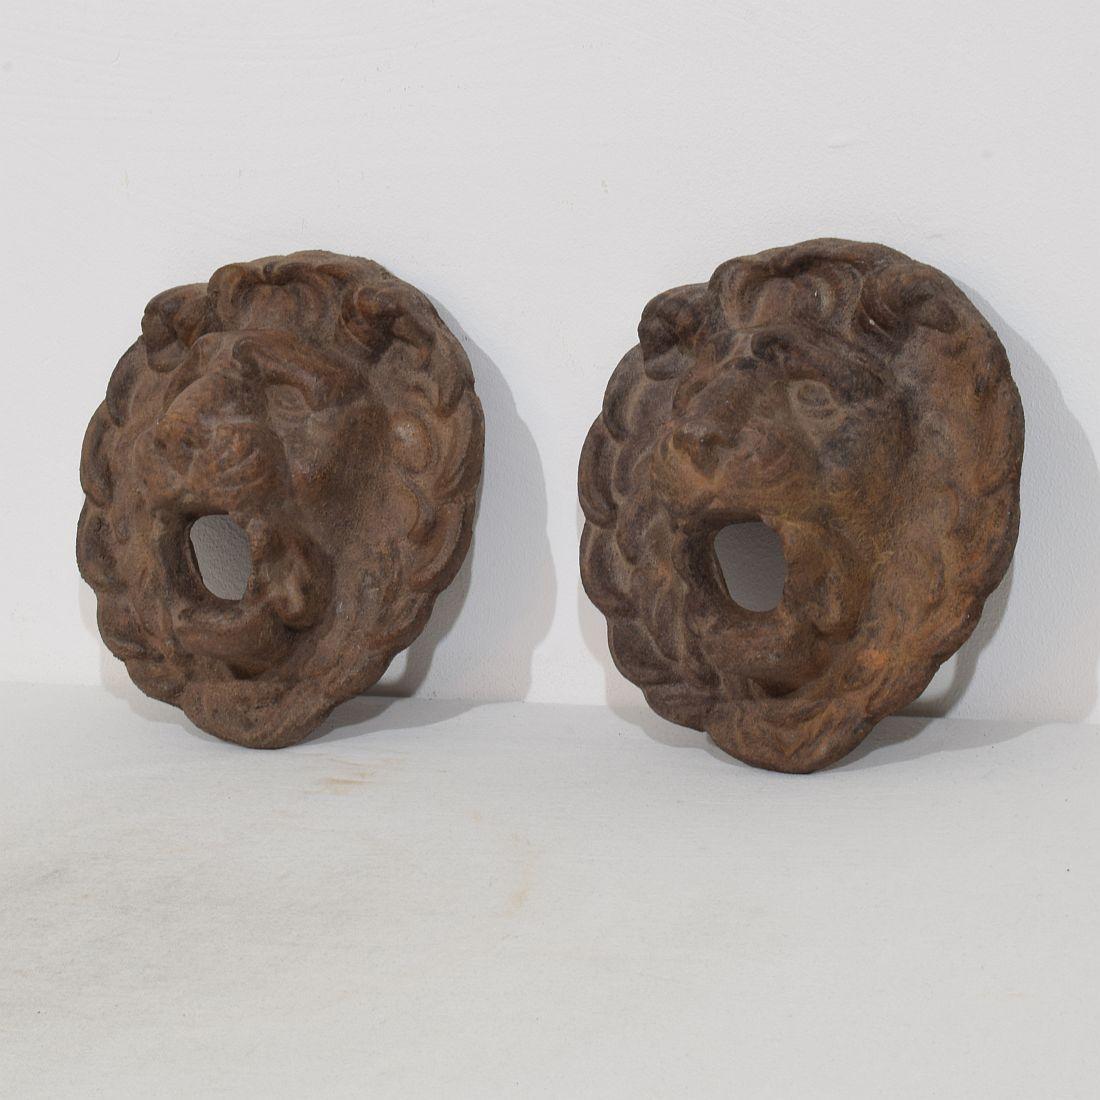 Merveilleux et rare couple de petites têtes de fontaine en fonte avec une grande expression, France, vers 1850-1900. Météorisé. La mesure est individuelle.
H:20cm  L:18,5cm P:8,5cm 